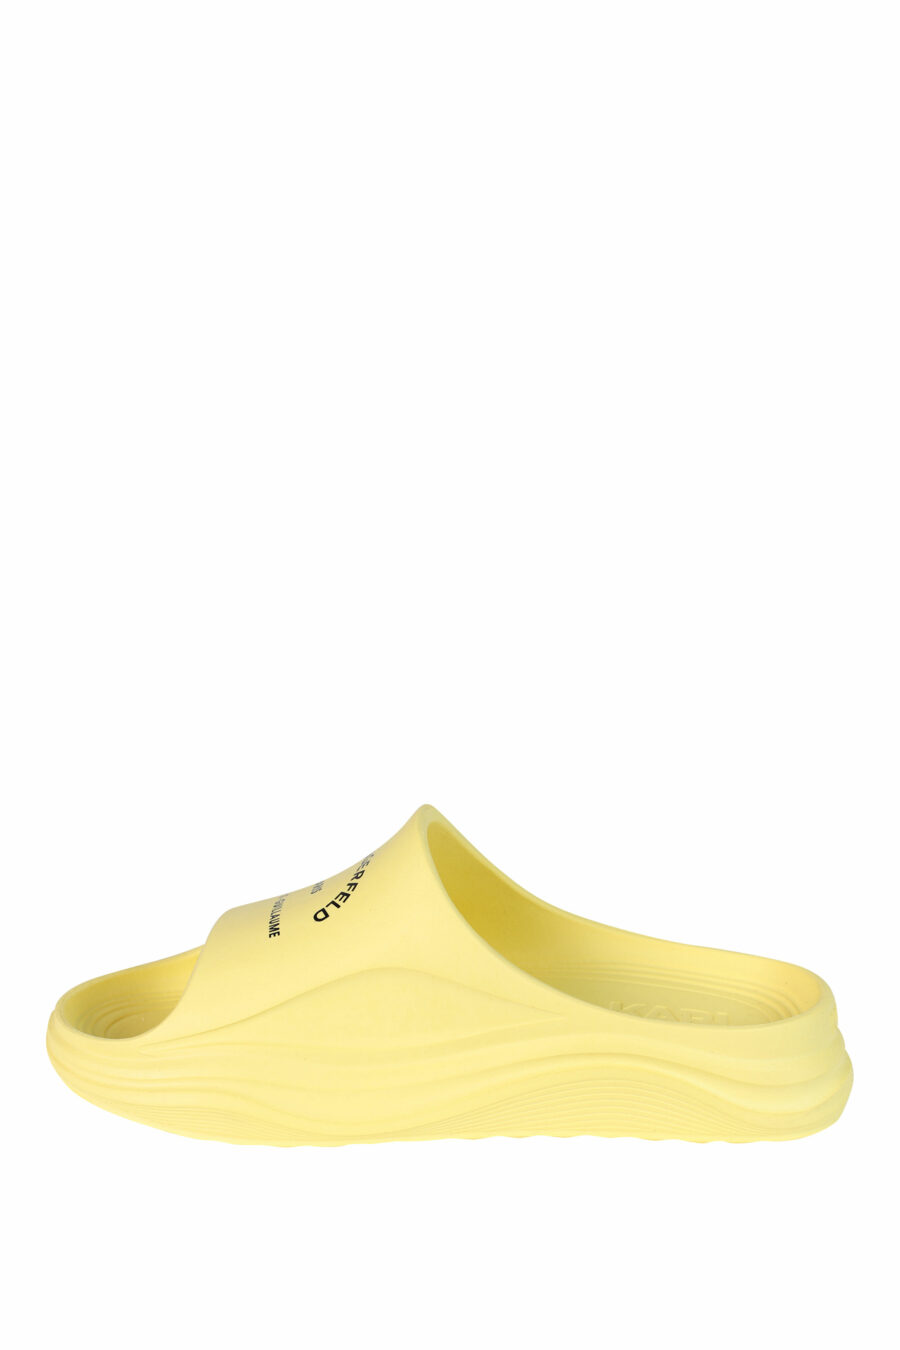 Sandálias "skoona" amarelas com logótipo - 5059529246012 3